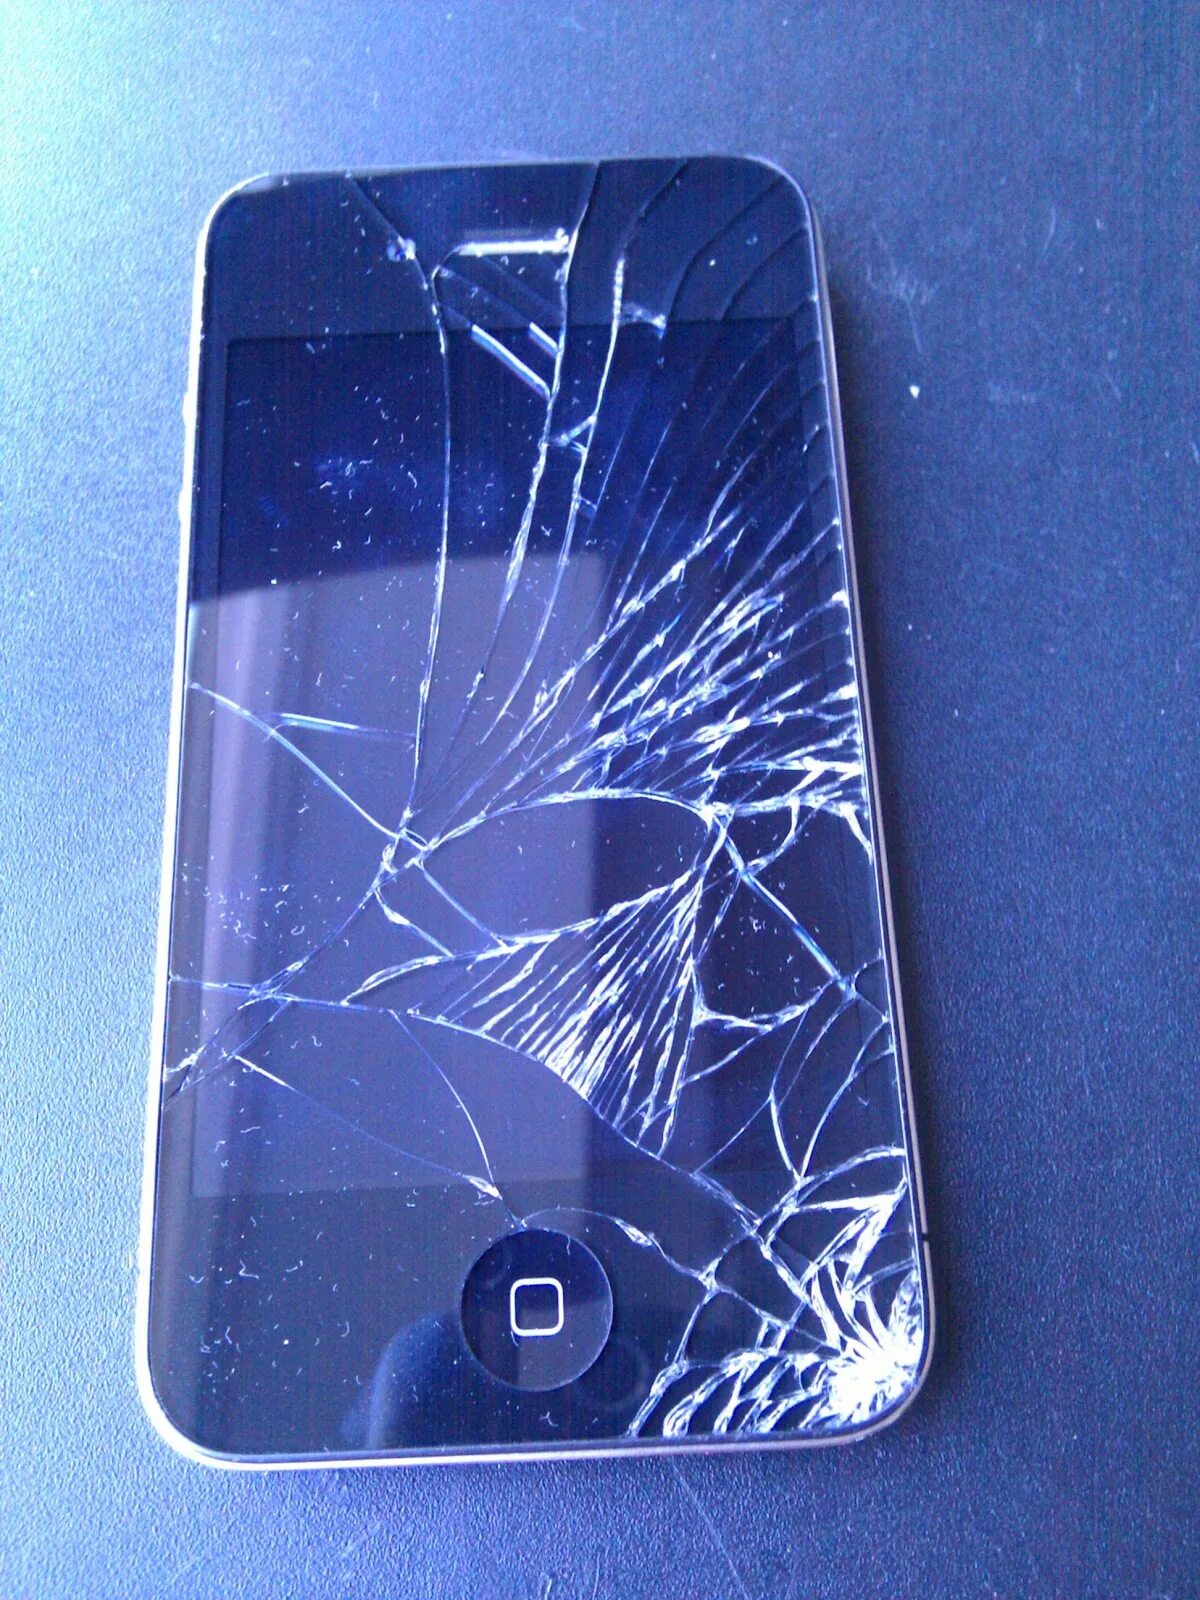 Купить разбитый телефон. Разбитый айфон 4. Разбитый смартфон. Разбит экран смартфона. Смартфон с разбитым экраном.